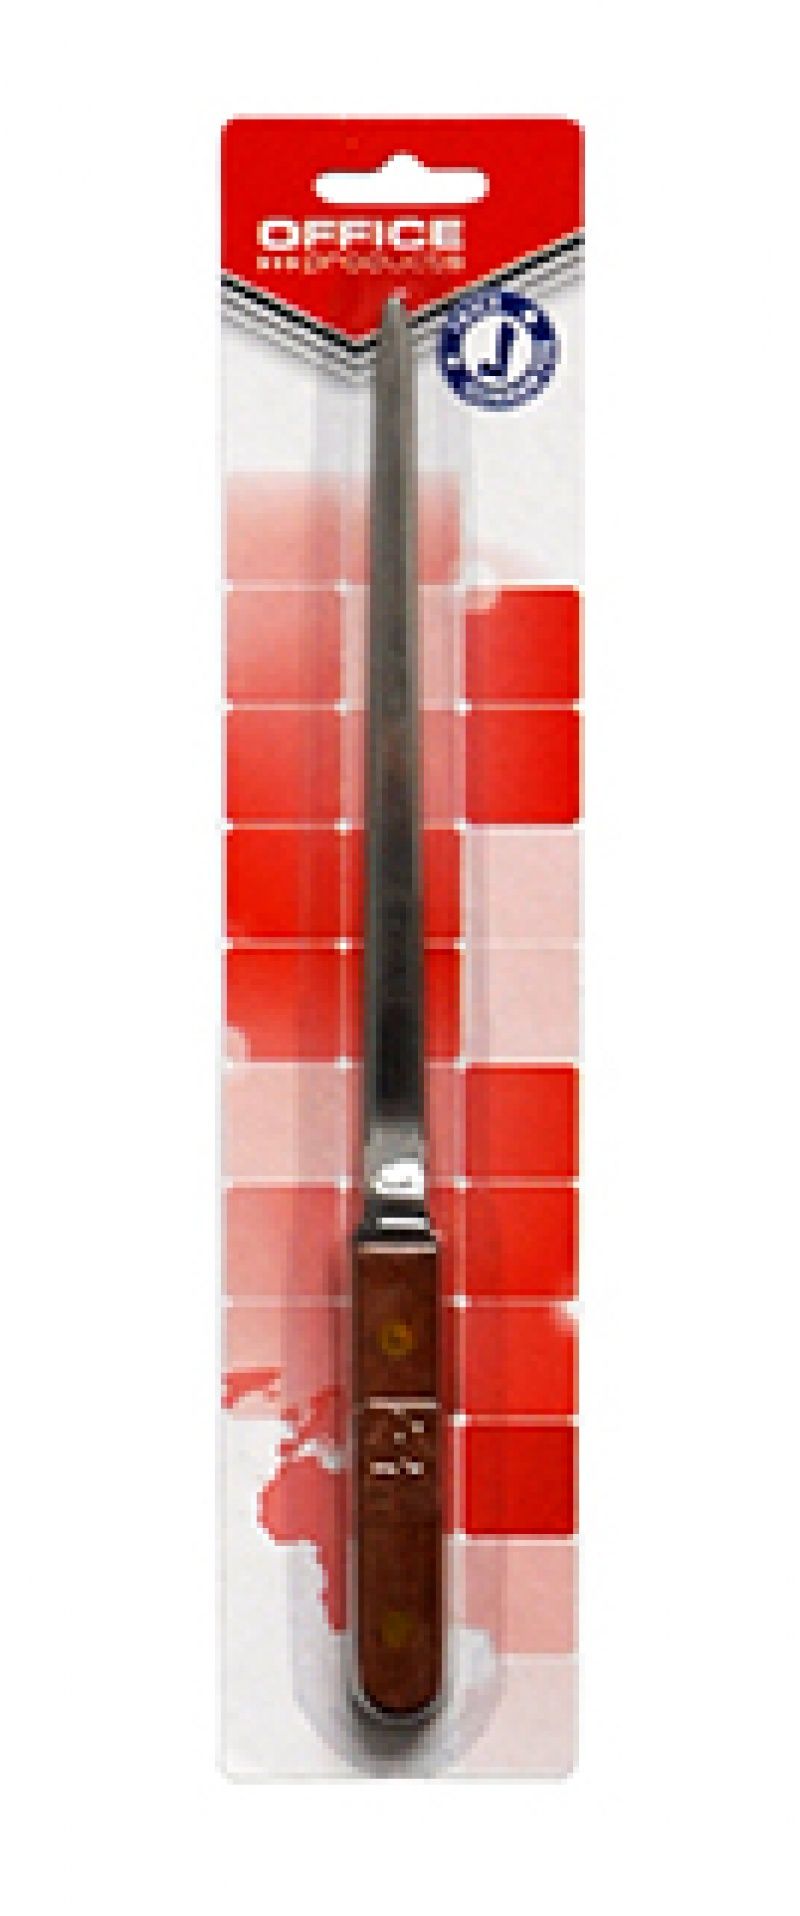 Nóż do kopert OFFICE PRODUCTS, 247mm, drewno/srebrny, 15012511-99